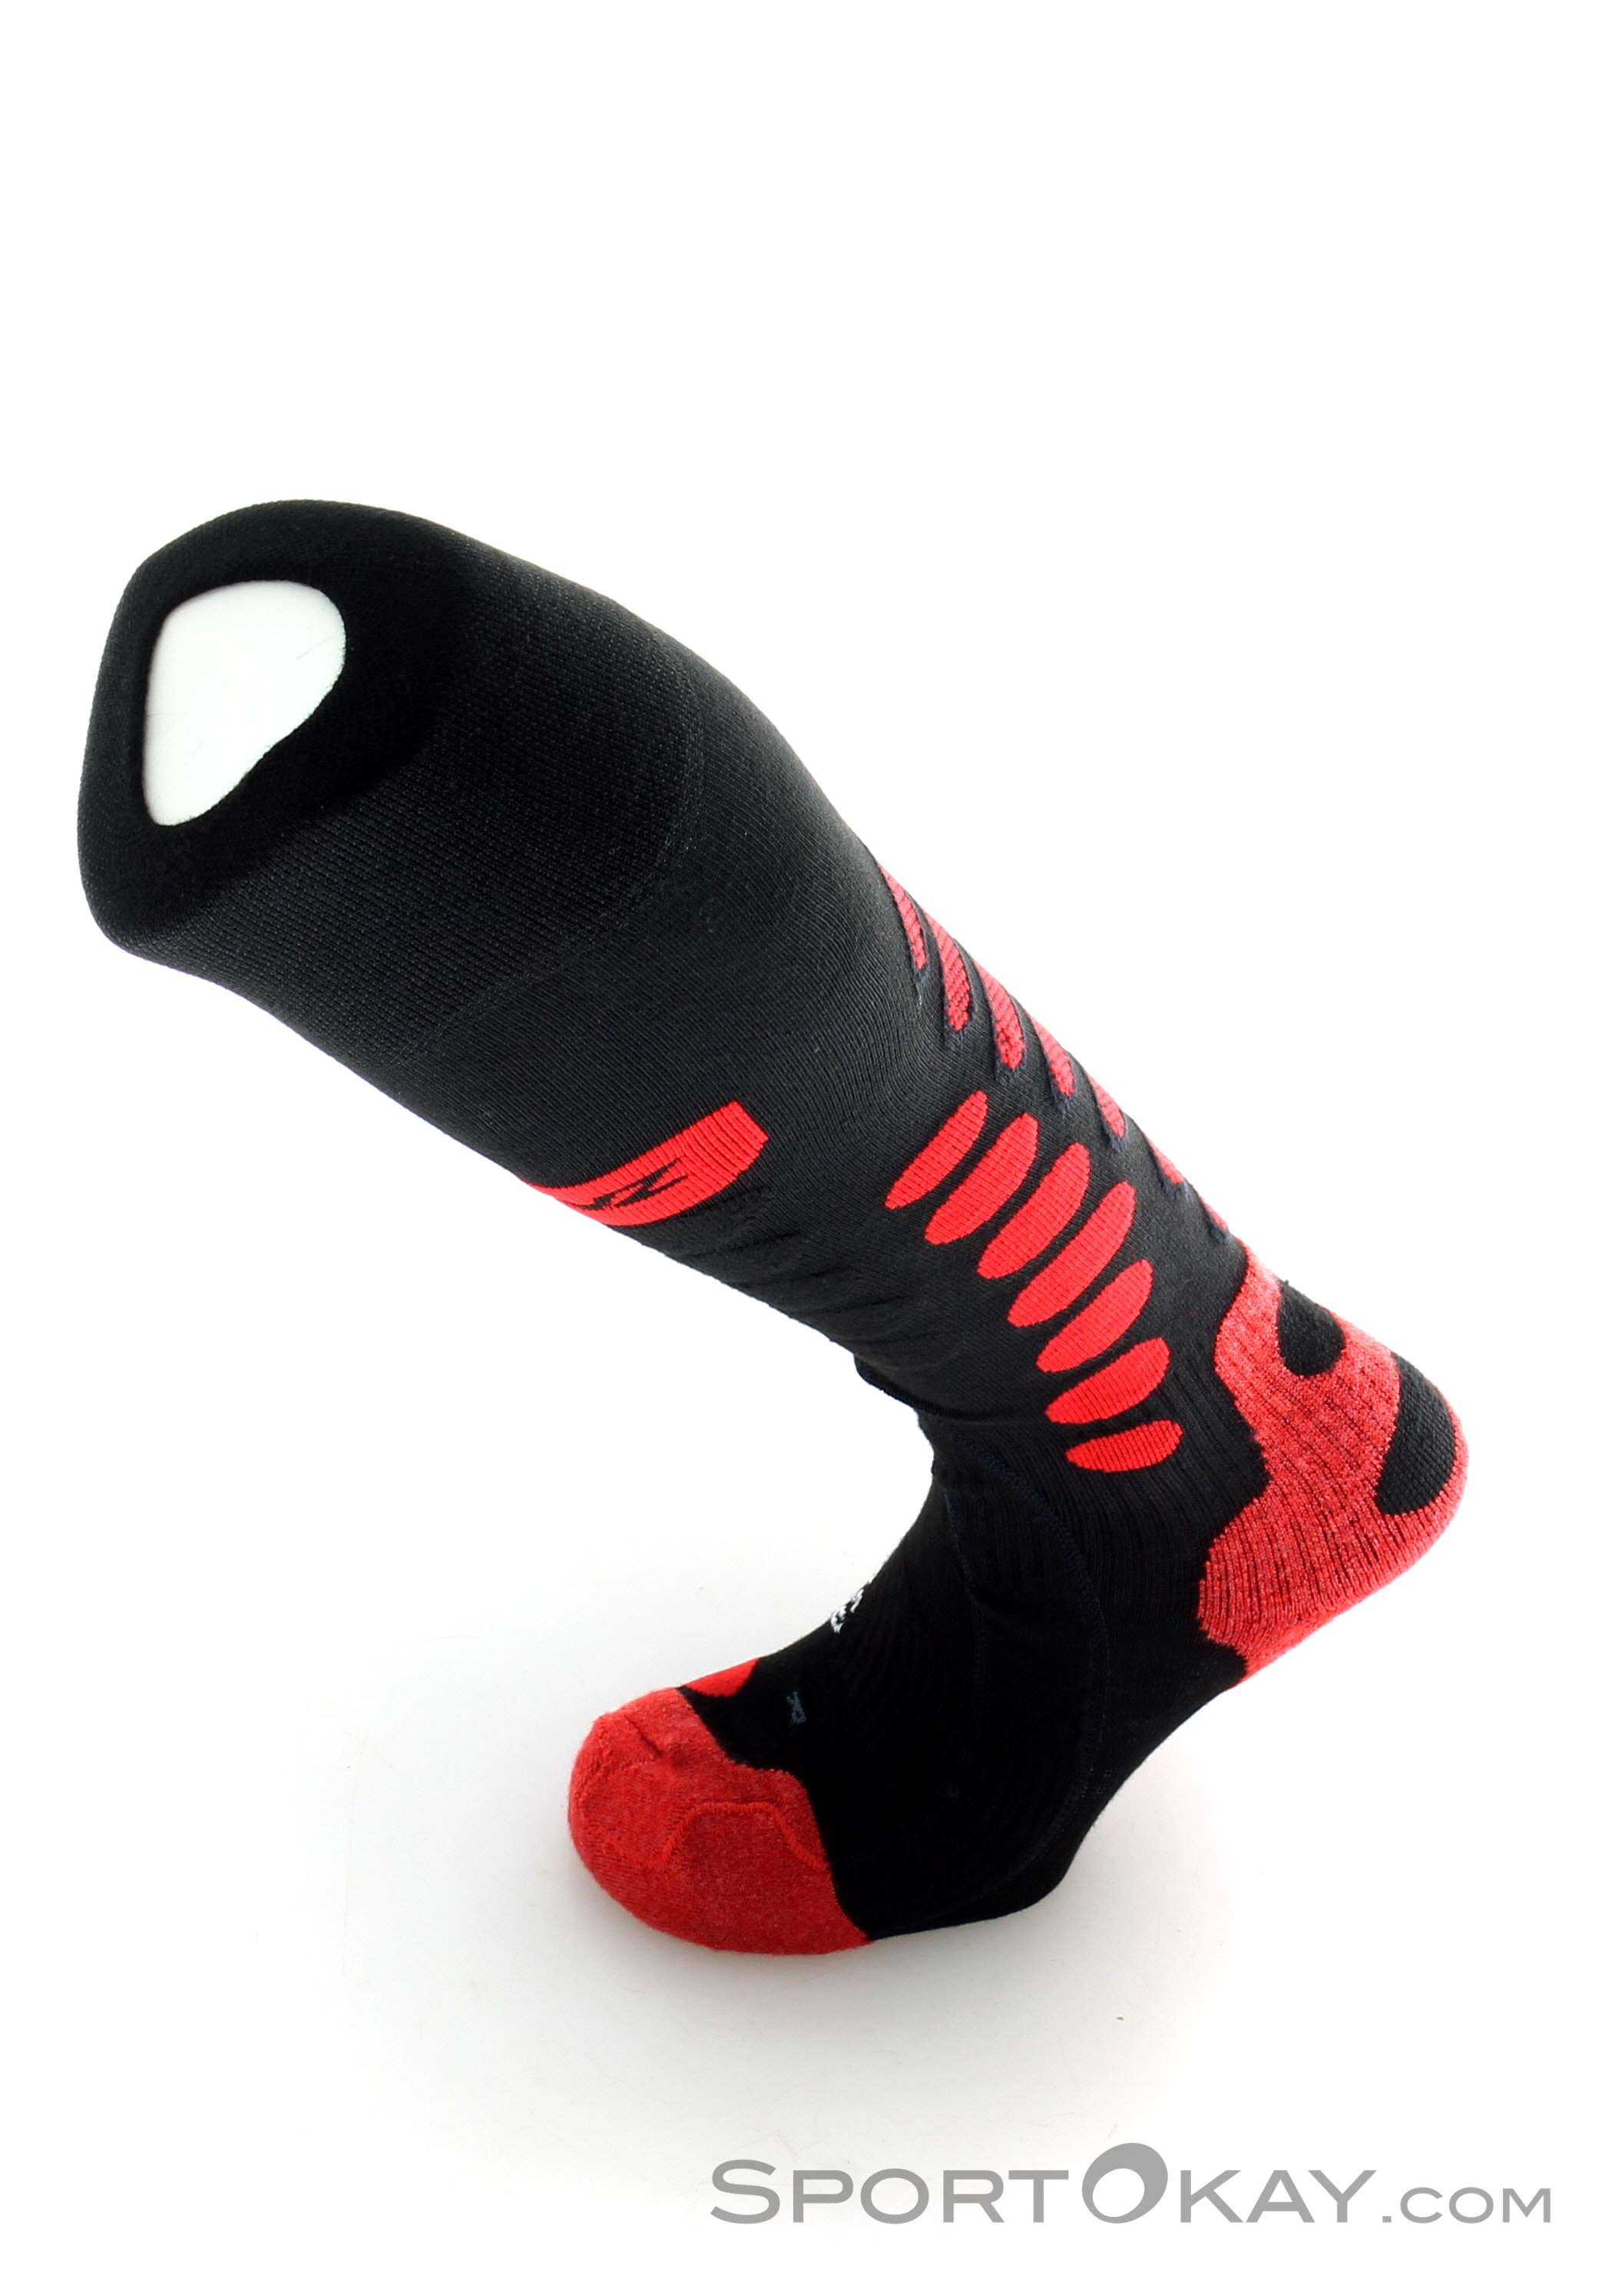 Spare Lenz Series 5 Heated Socks for Sale